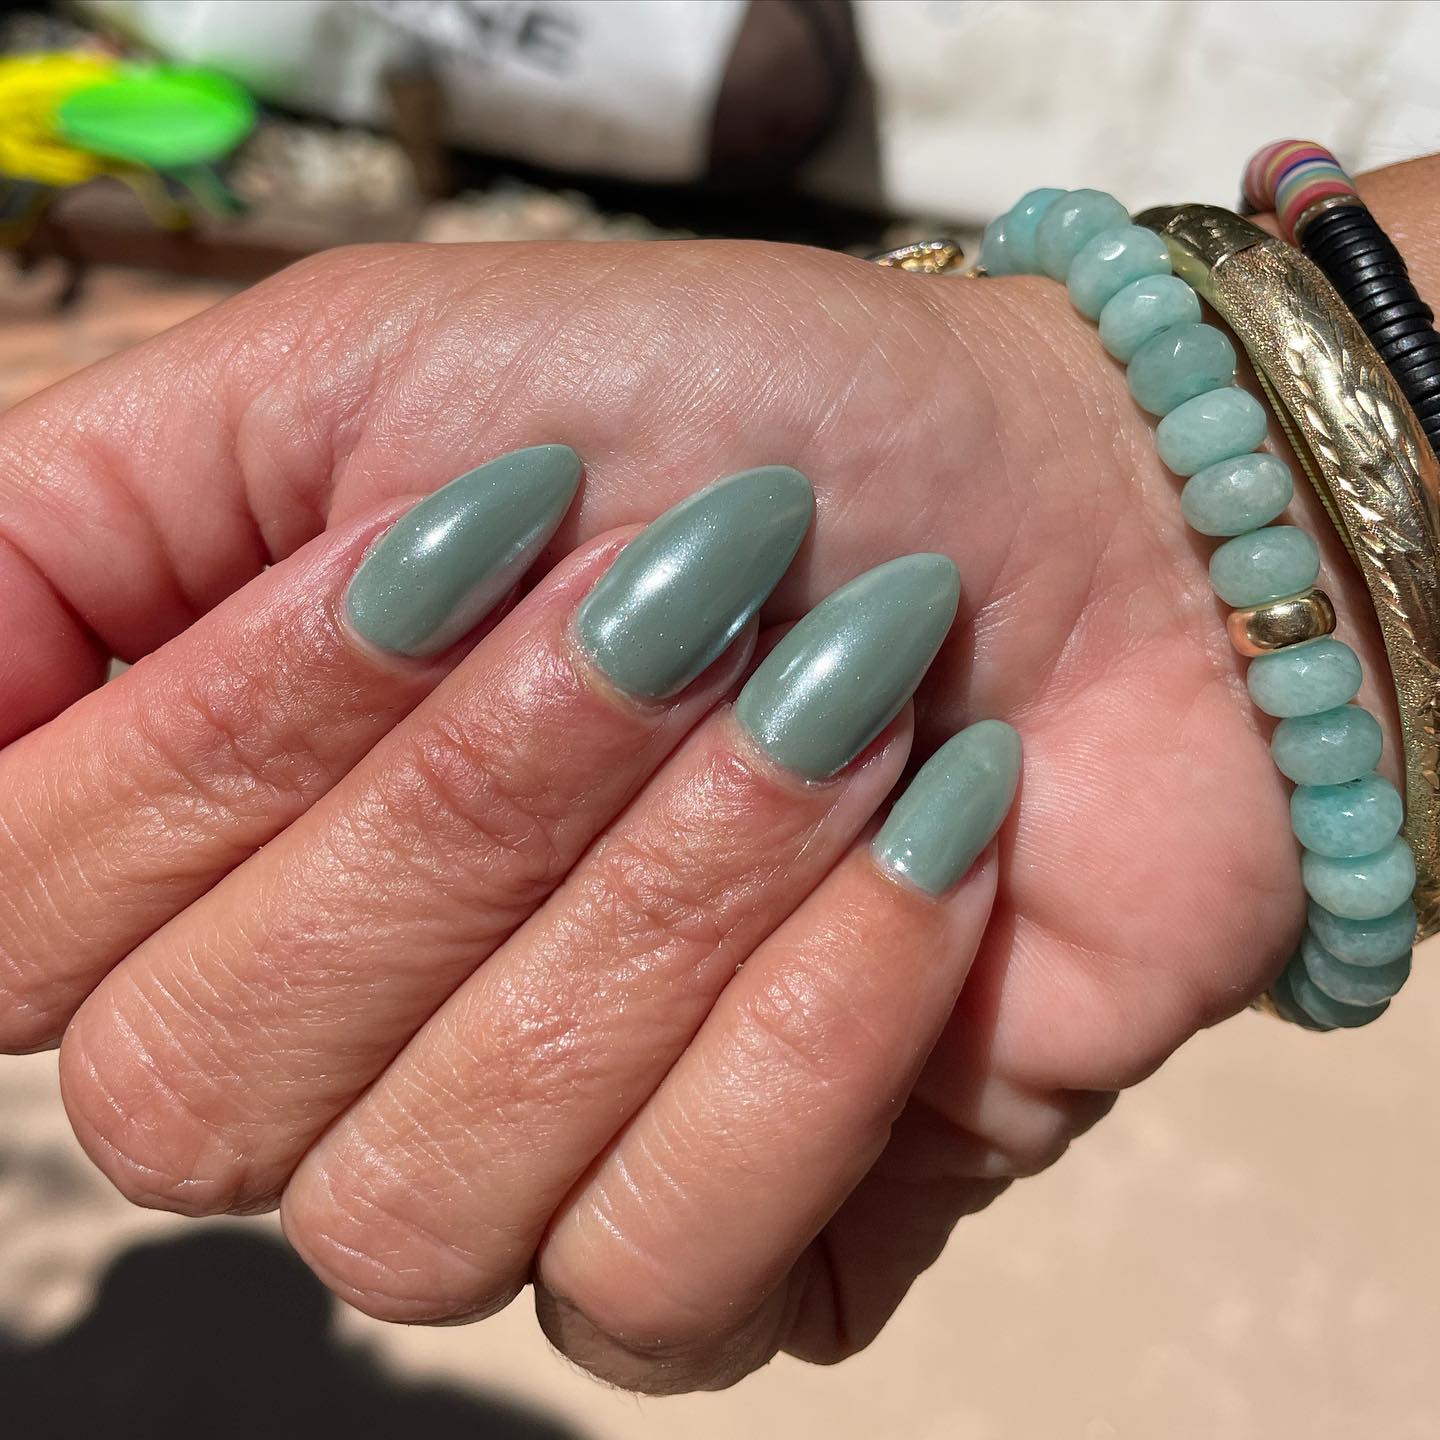 El cromo verde salvia es un bonito look veraniego. Si quieres combinar tus uñas con tu pulsera, la de arriba es una gran idea.